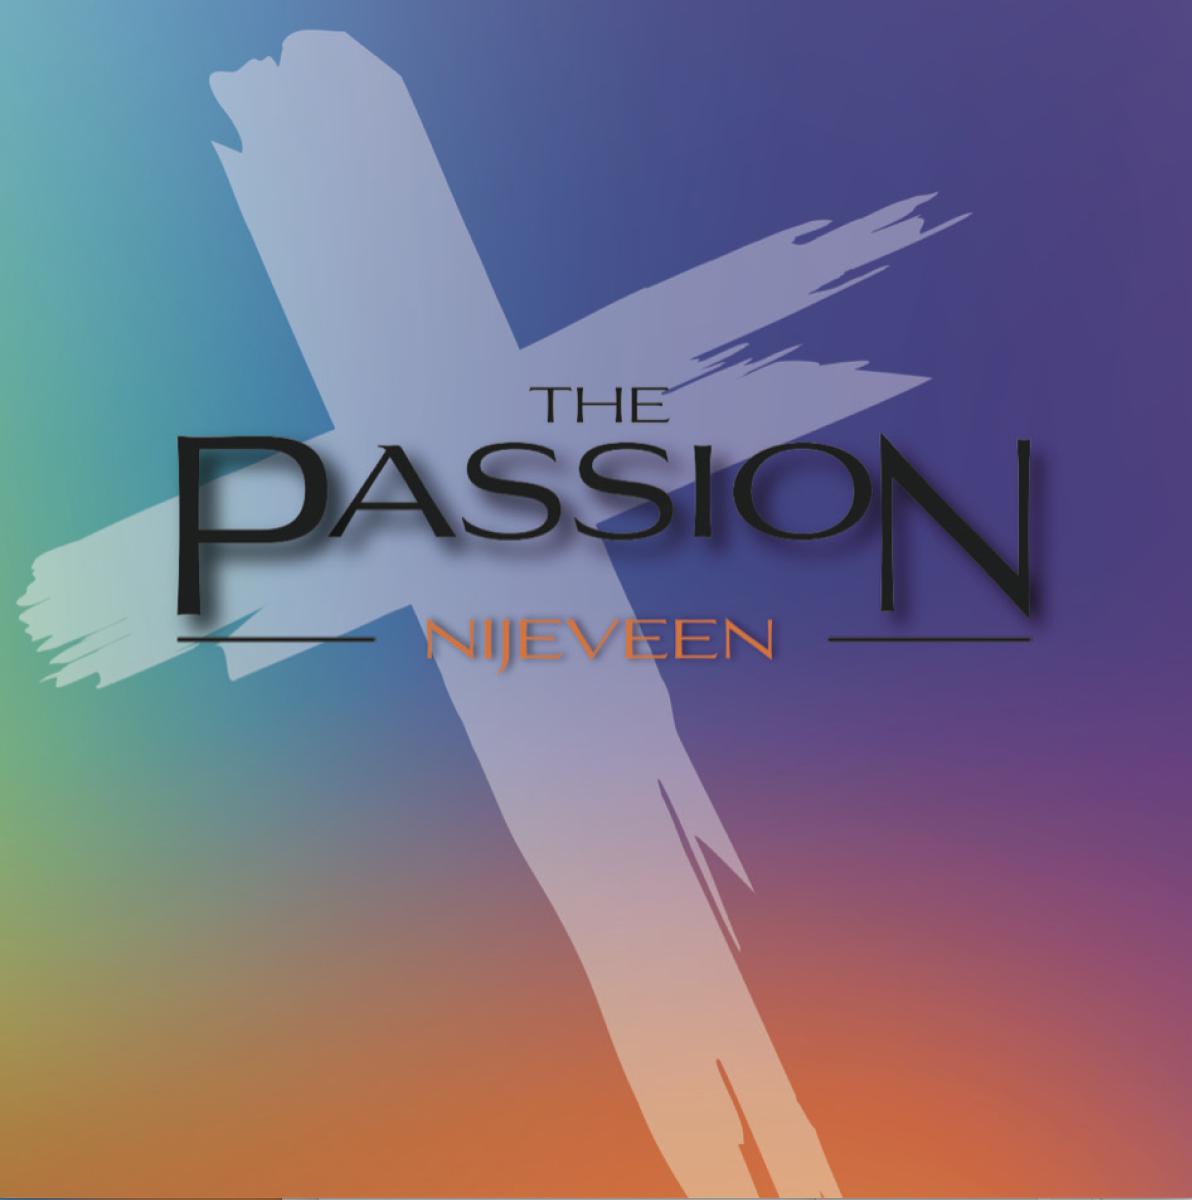 The Passion Nijeveen - concerten | Ontdek Meppel | Weet wat er speelt. 